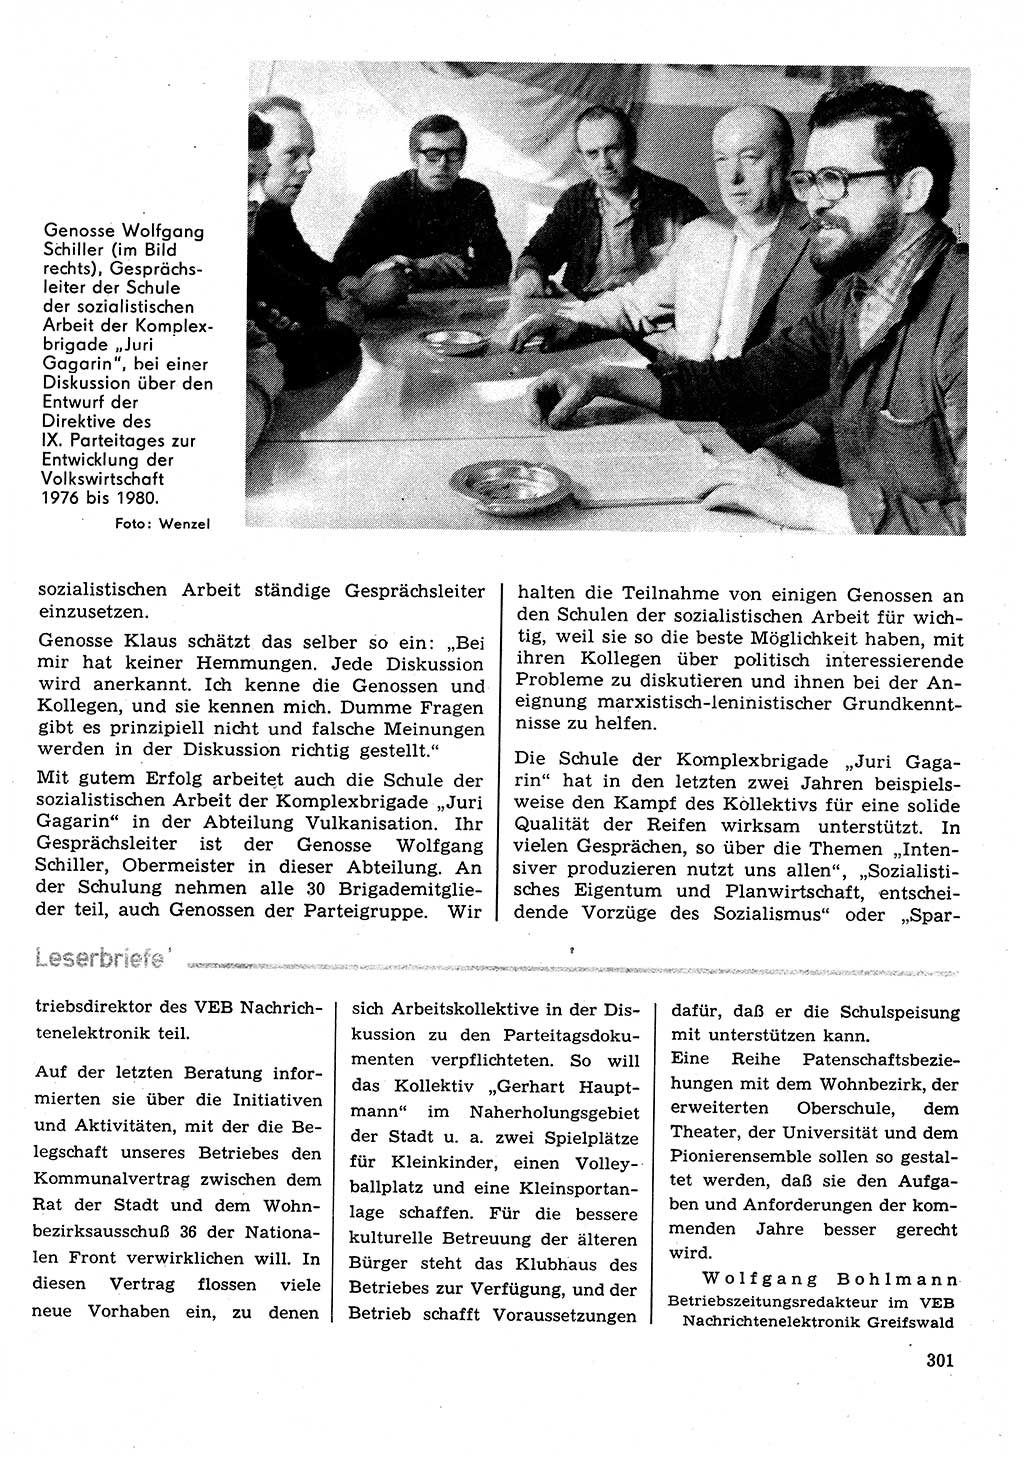 Neuer Weg (NW), Organ des Zentralkomitees (ZK) der SED (Sozialistische Einheitspartei Deutschlands) für Fragen des Parteilebens, 31. Jahrgang [Deutsche Demokratische Republik (DDR)] 1976, Seite 301 (NW ZK SED DDR 1976, S. 301)